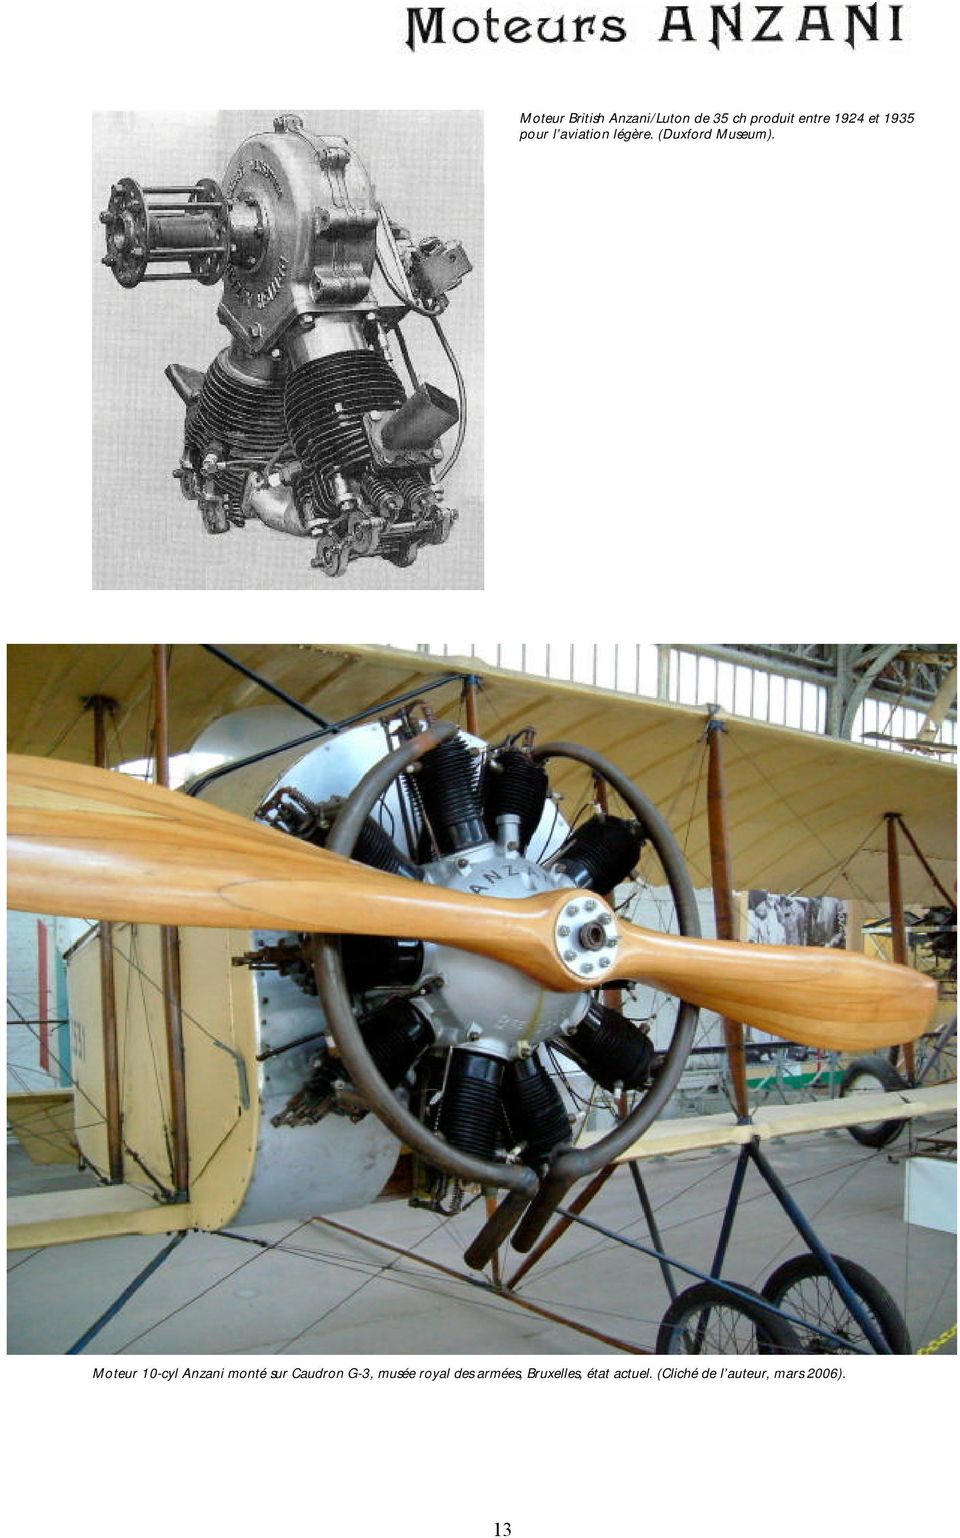 Moteur 10-cyl Anzani monté sur Caudron G-3, musée royal